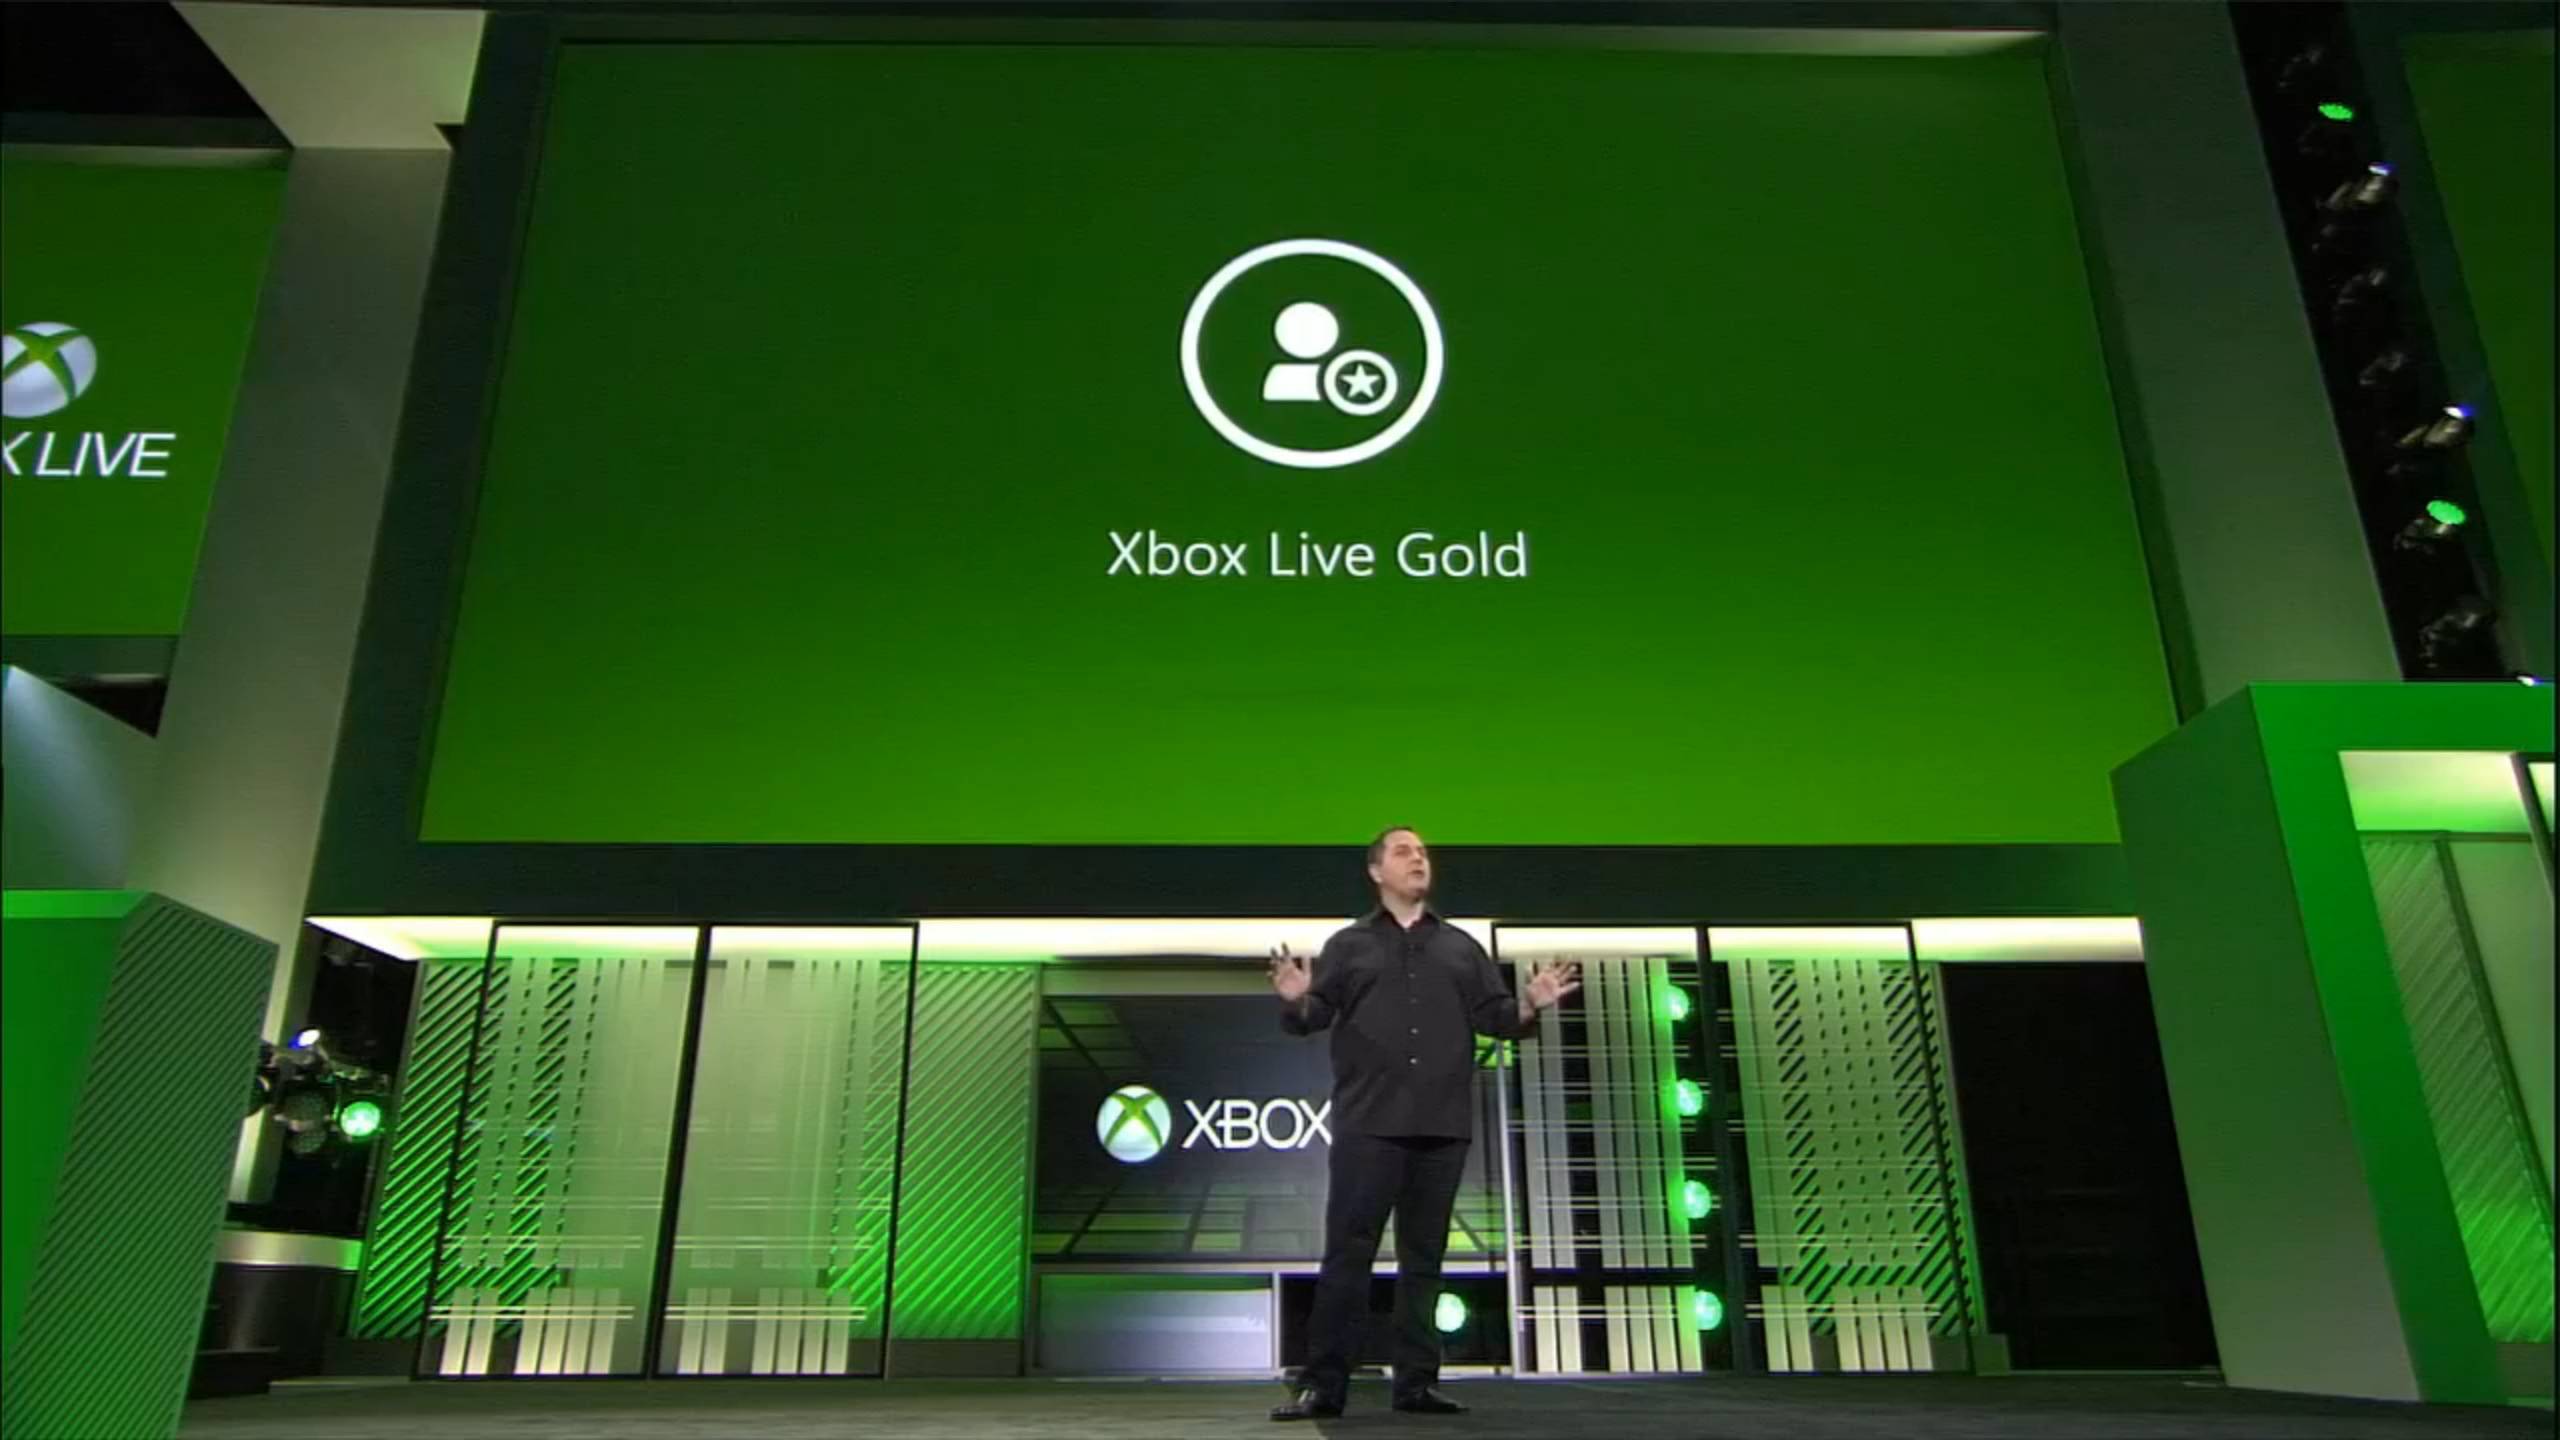 Bạn yêu thích chơi game trên Xbox? Bạn muốn trải nghiệm Xbox Live Gold mà không tốn bất kỳ chi phí nào? Hãy tải miễn phí Xbox Live Gold ngay bây giờ để thỏa sức chơi game và kết nối với những người chơi khác trên toàn thế giới.